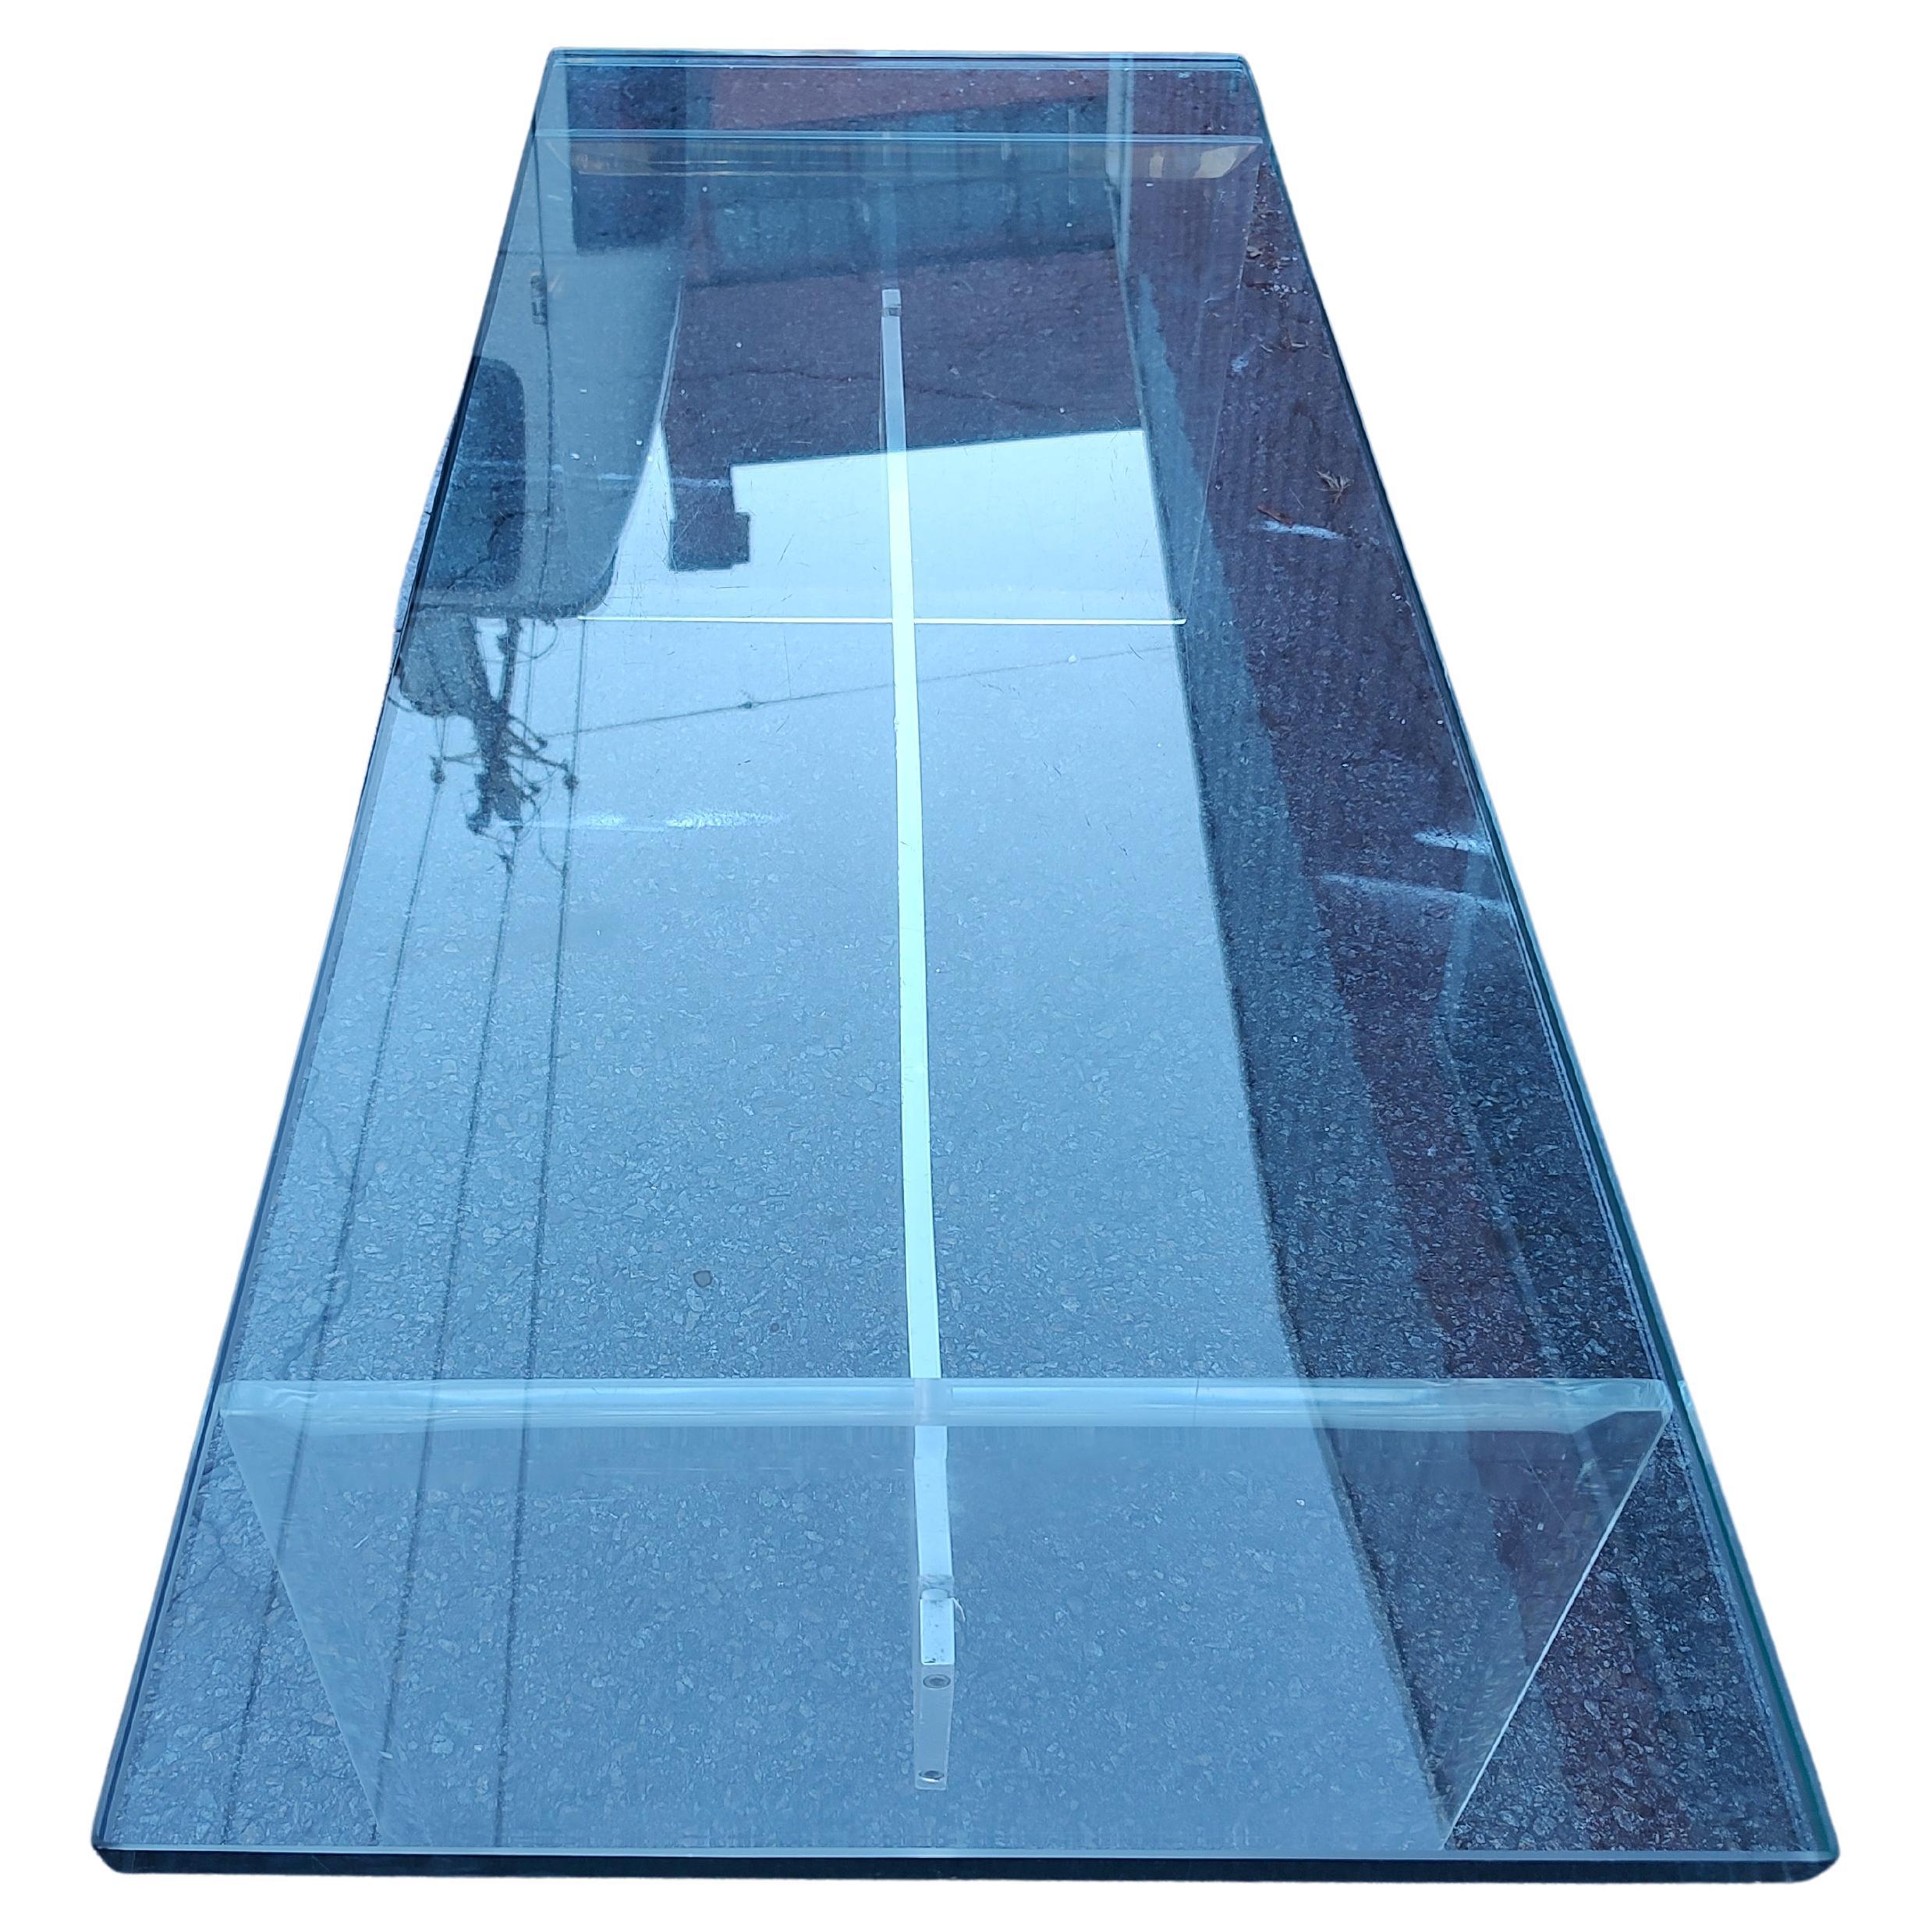 Fabelhafte einfache stilvolle Cocktail-Tisch mit einer dimensionalen dicken Glasplatte durch abgeschrägte Lucite Platte unterstützt und eine Aluminium-Strebe zentriert. Alle in ausgezeichnetem Vintage-Zustand mit minimalen Abnutzungserscheinungen,